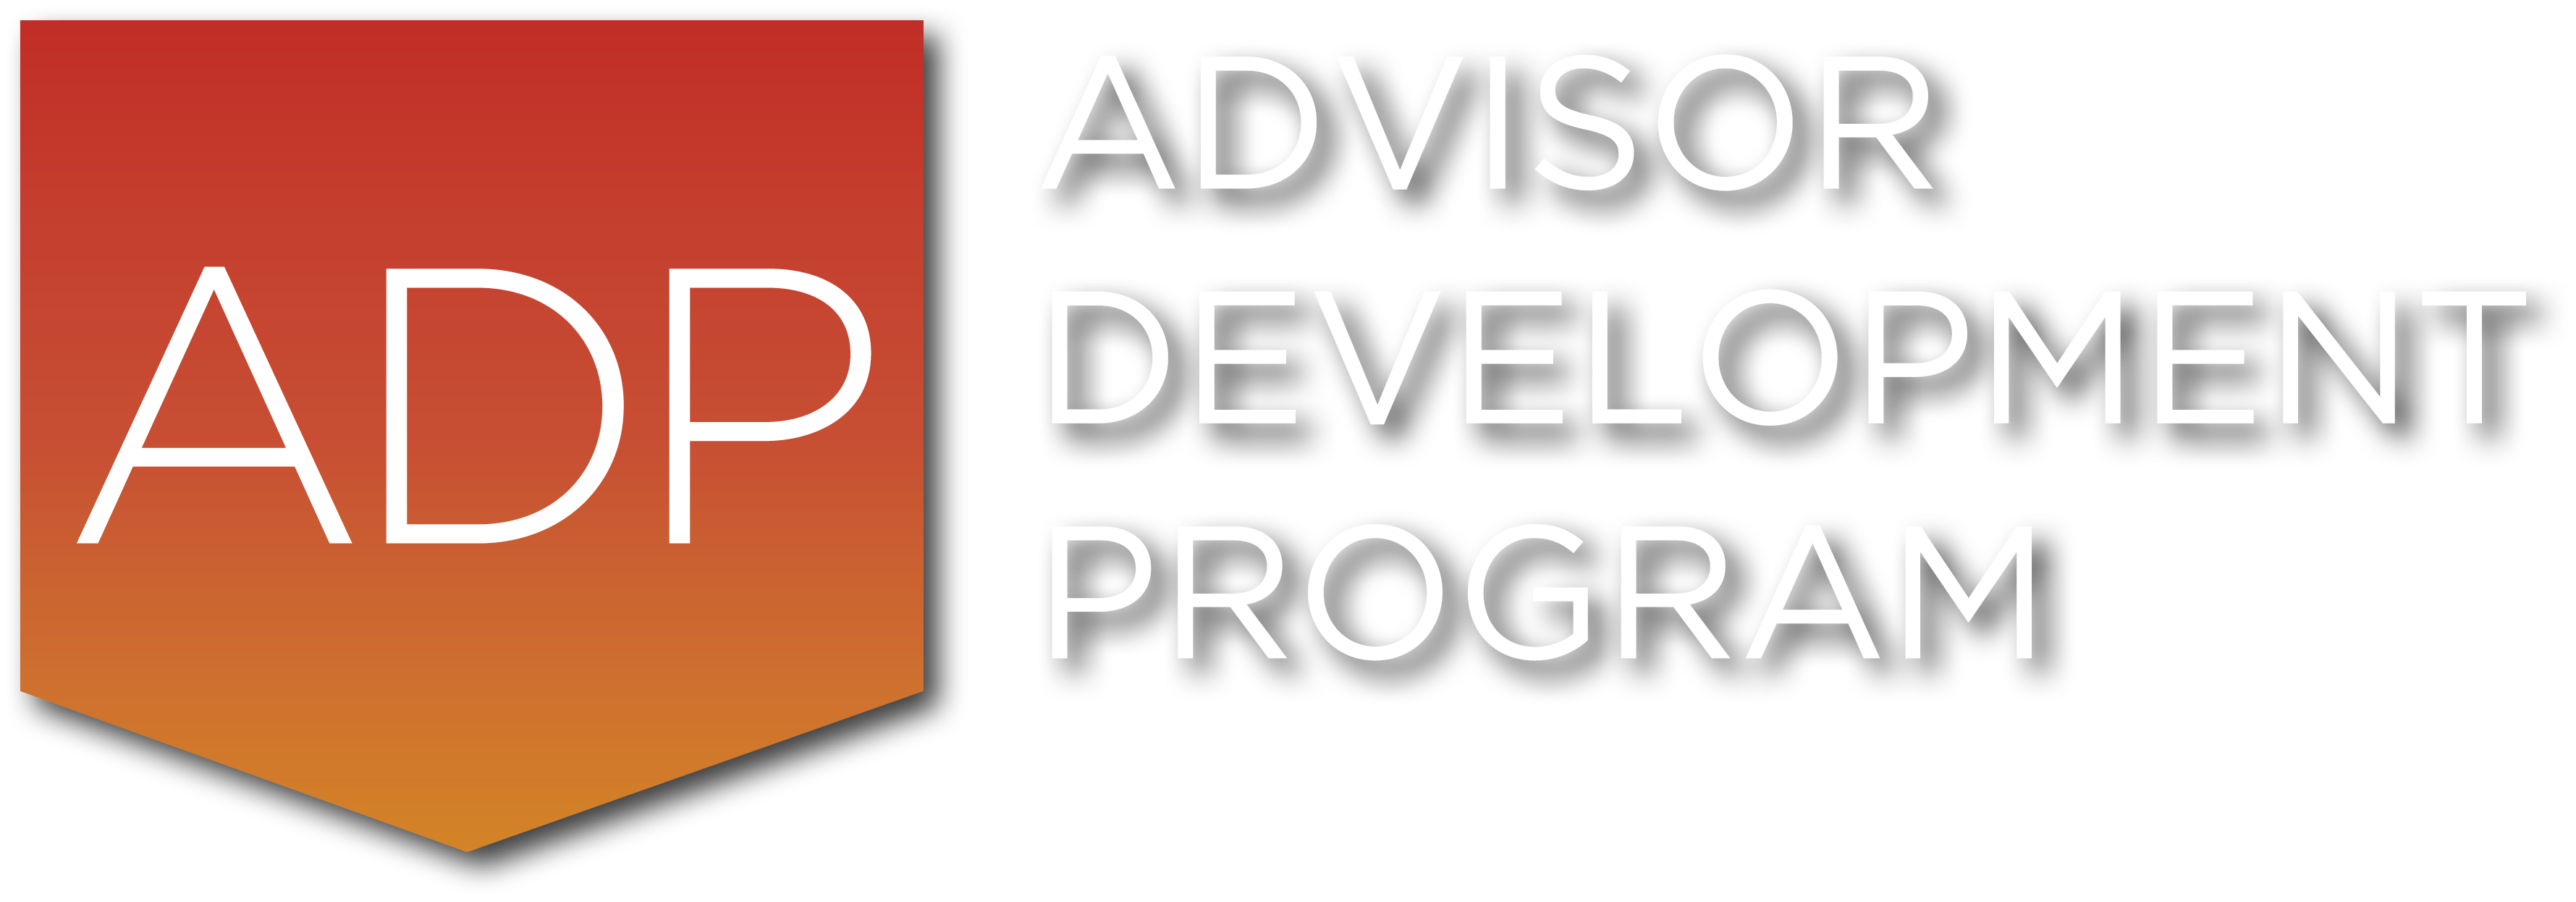 Advisor Development Program